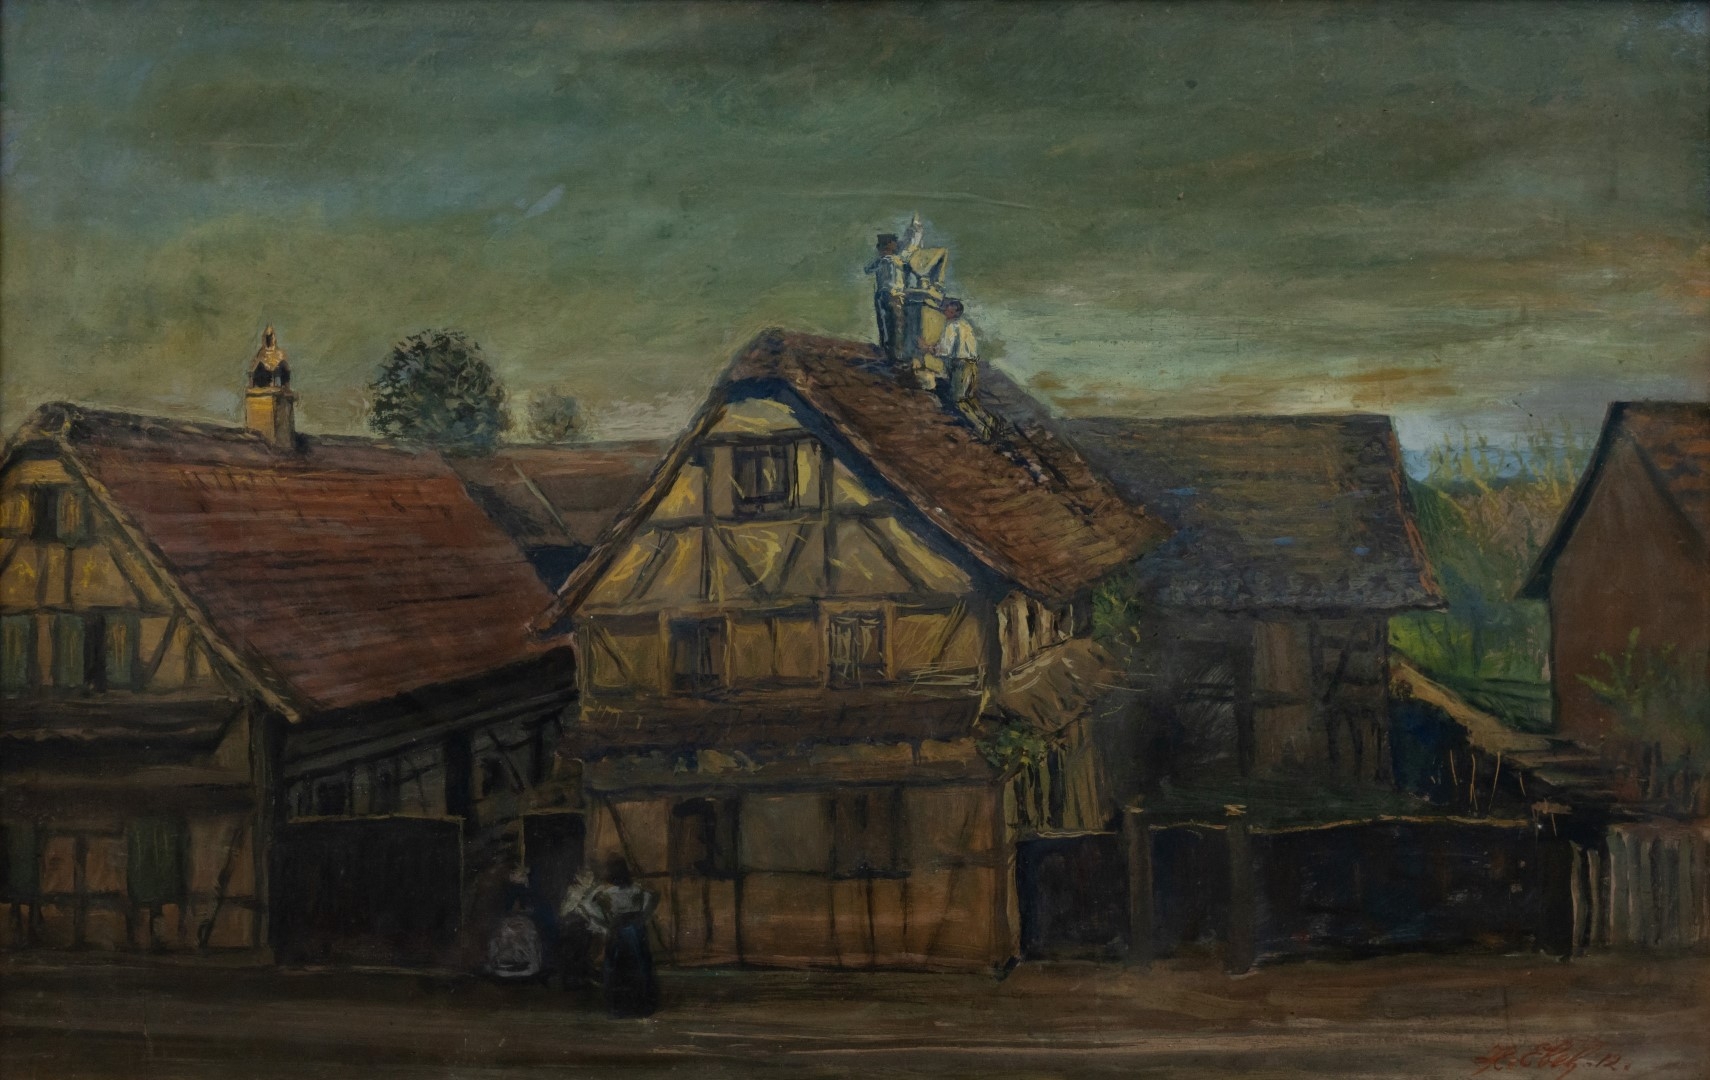  Travaux sur toiture en face, 1912, tempera sur carton, 50x78 cm, collection particulière.